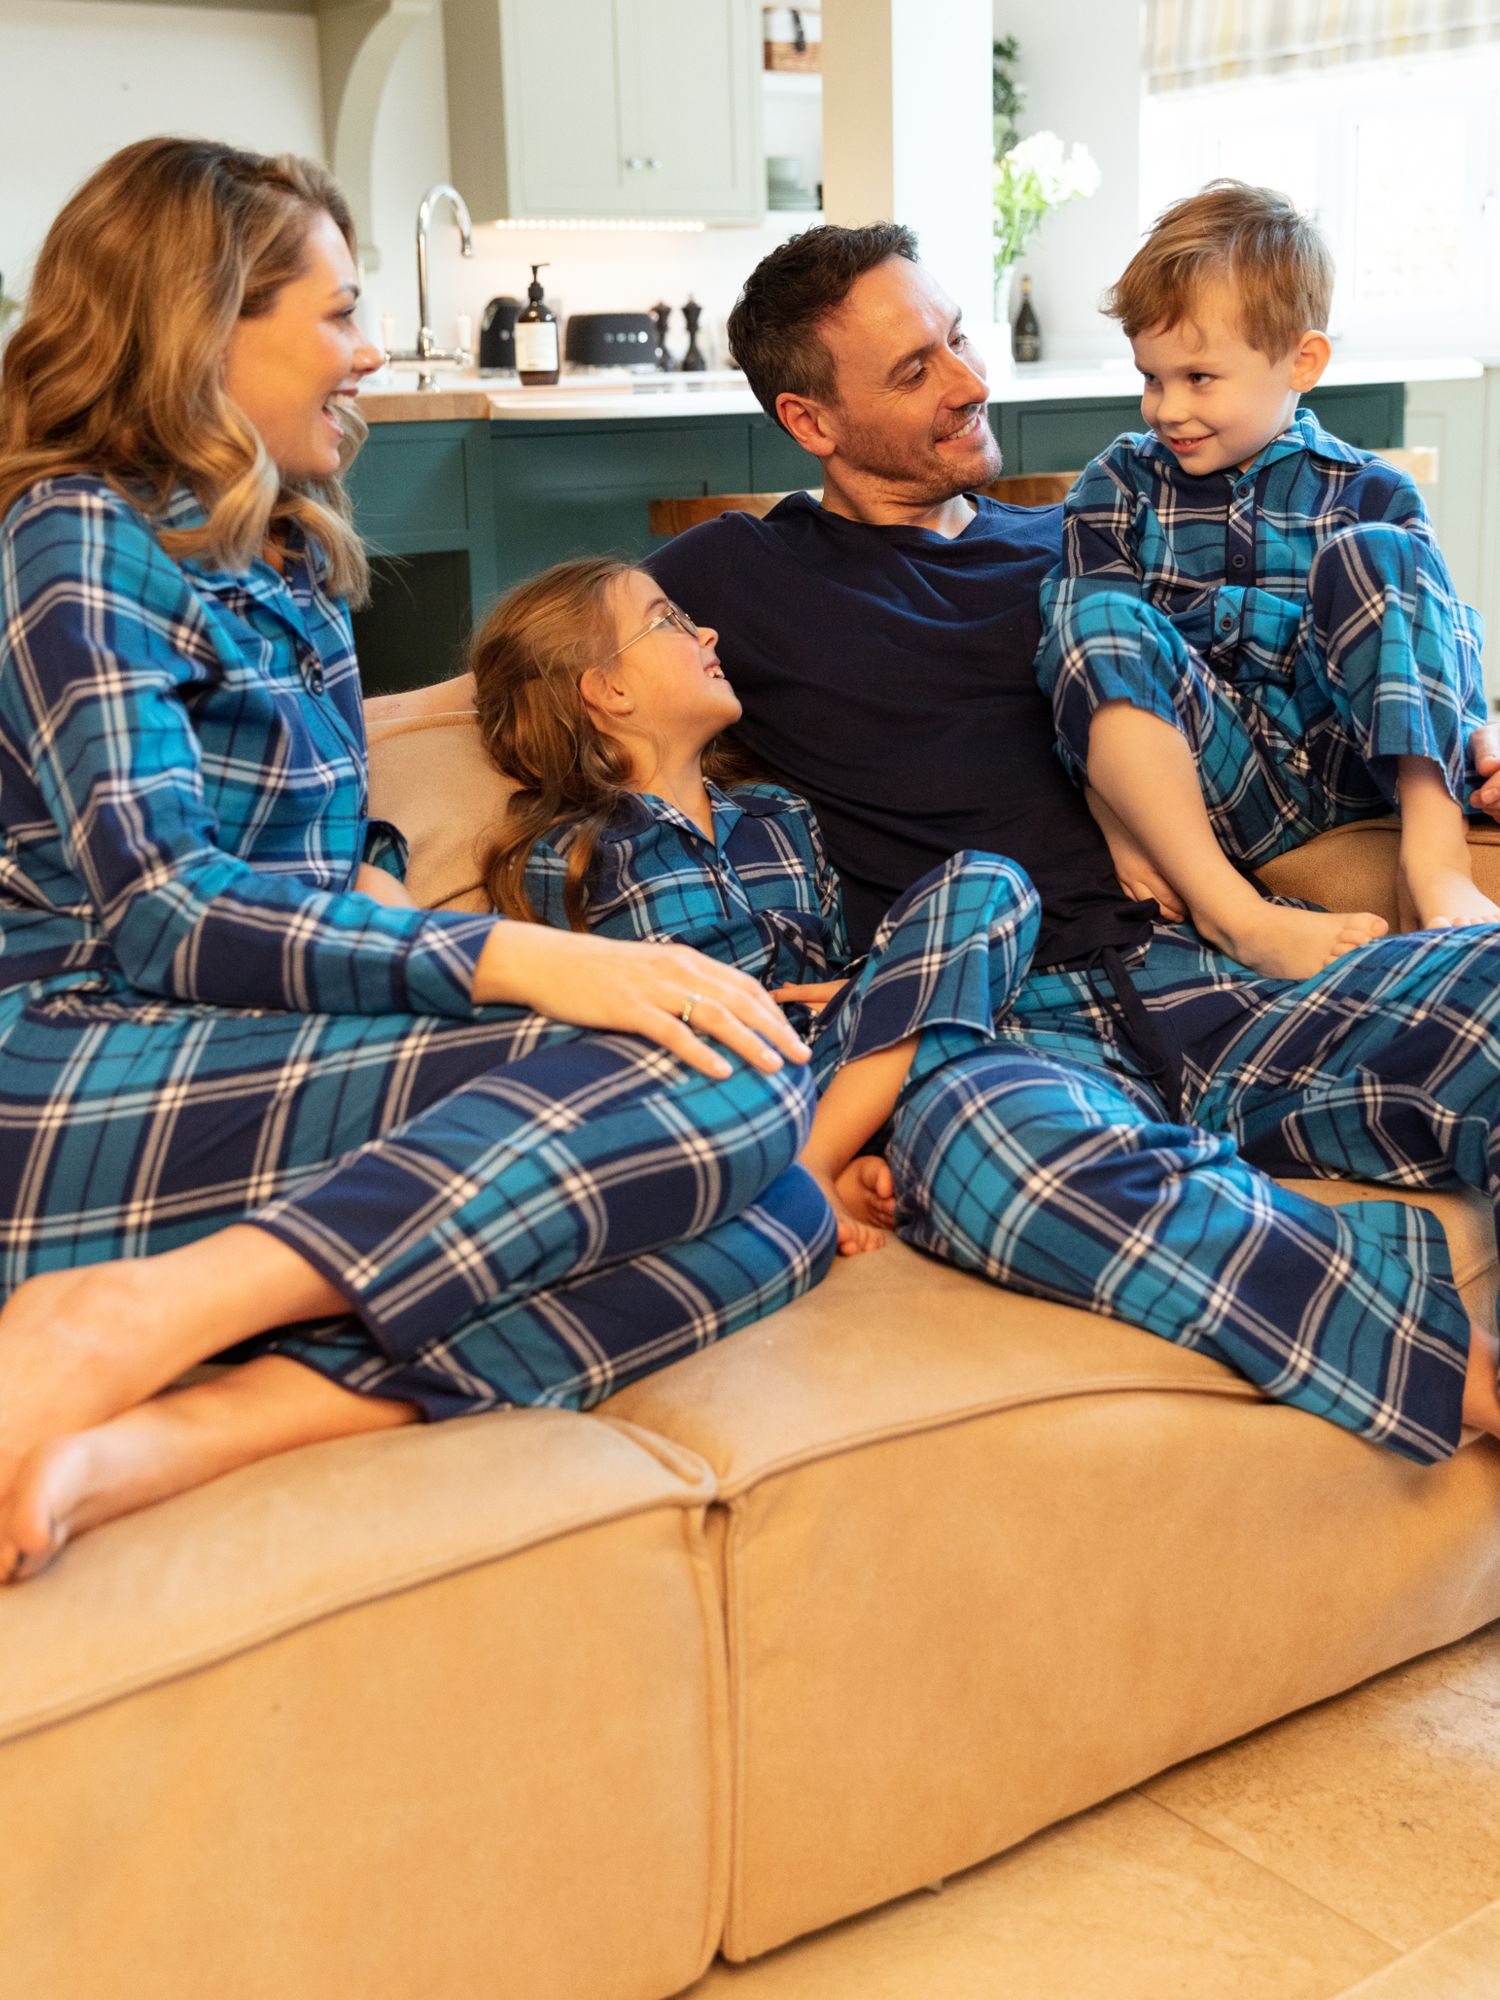 Minijammies Kids' Felix Check Unisex Pyjamas, Dark Blue, 10-11 years